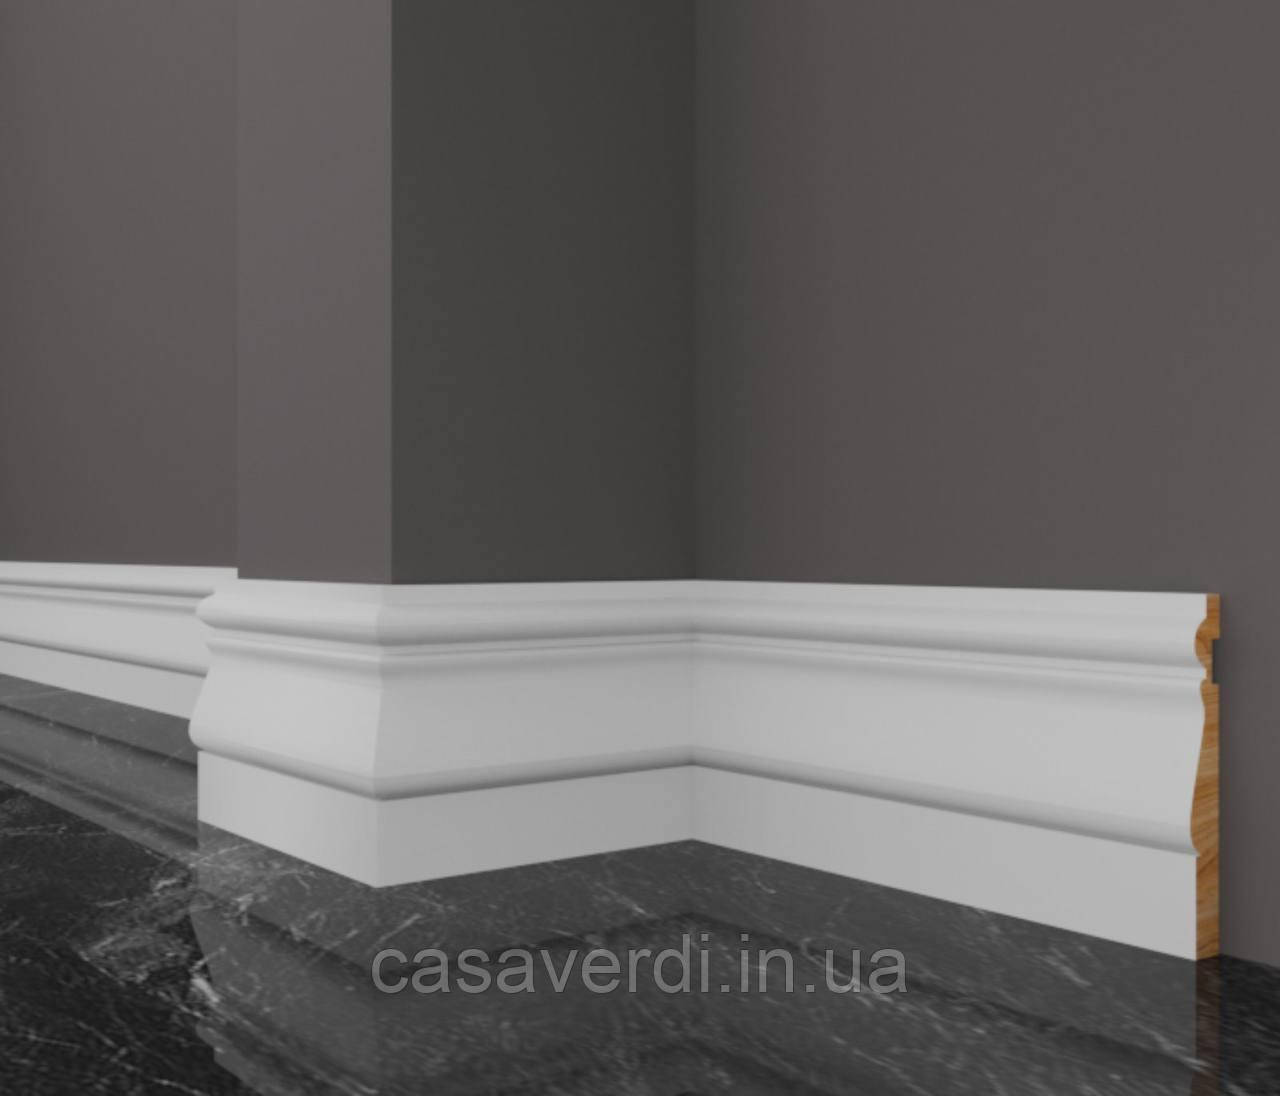 Плінтус Casa Verdi Classic 10 см білий з масиву ясена